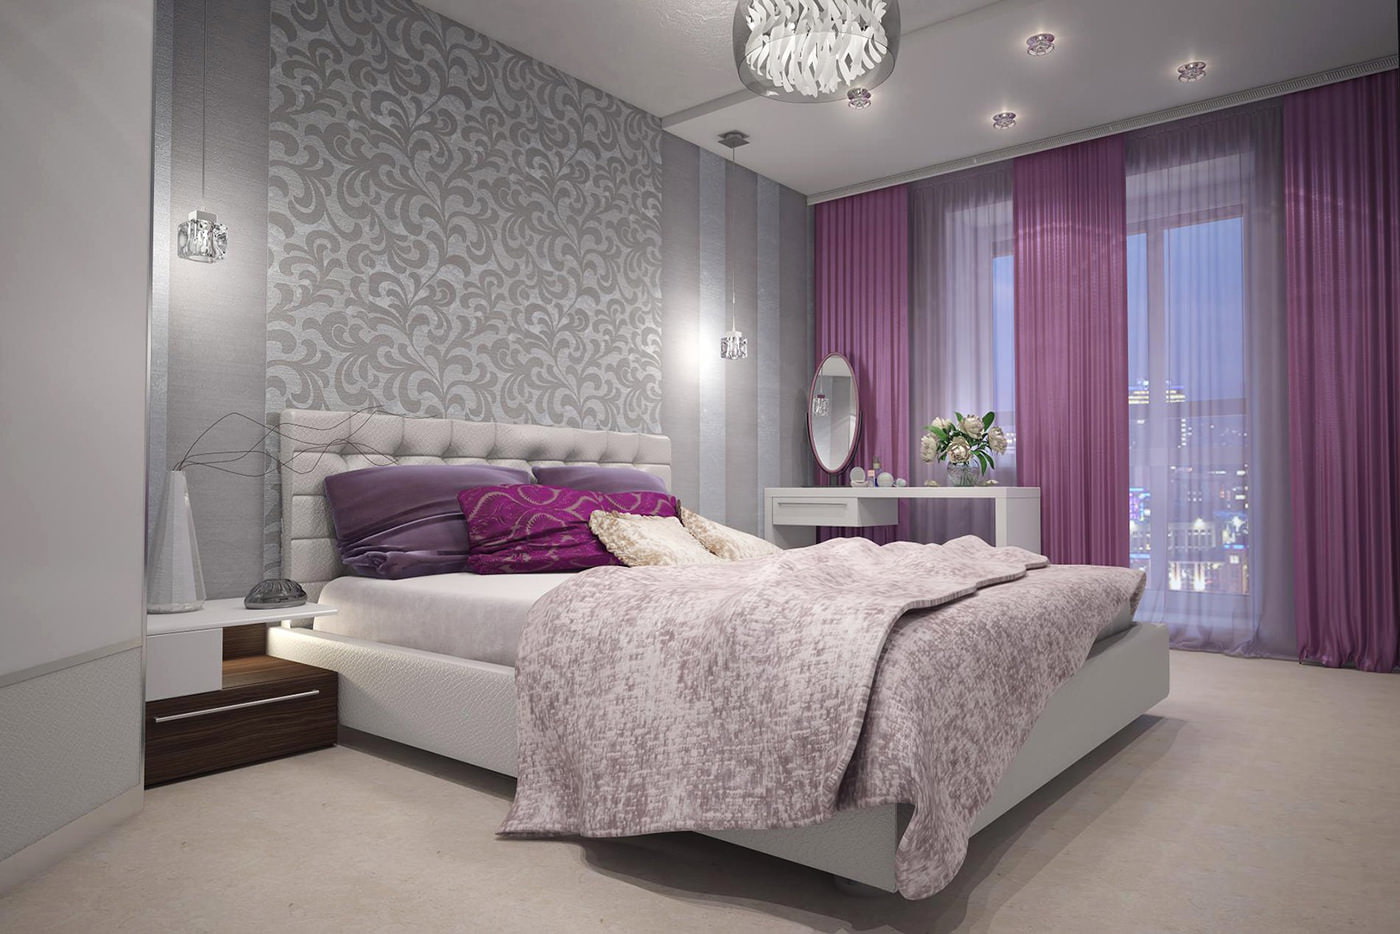 langsir ungu dalam reka bentuk bilik tidur dengan kertas dinding kelabu